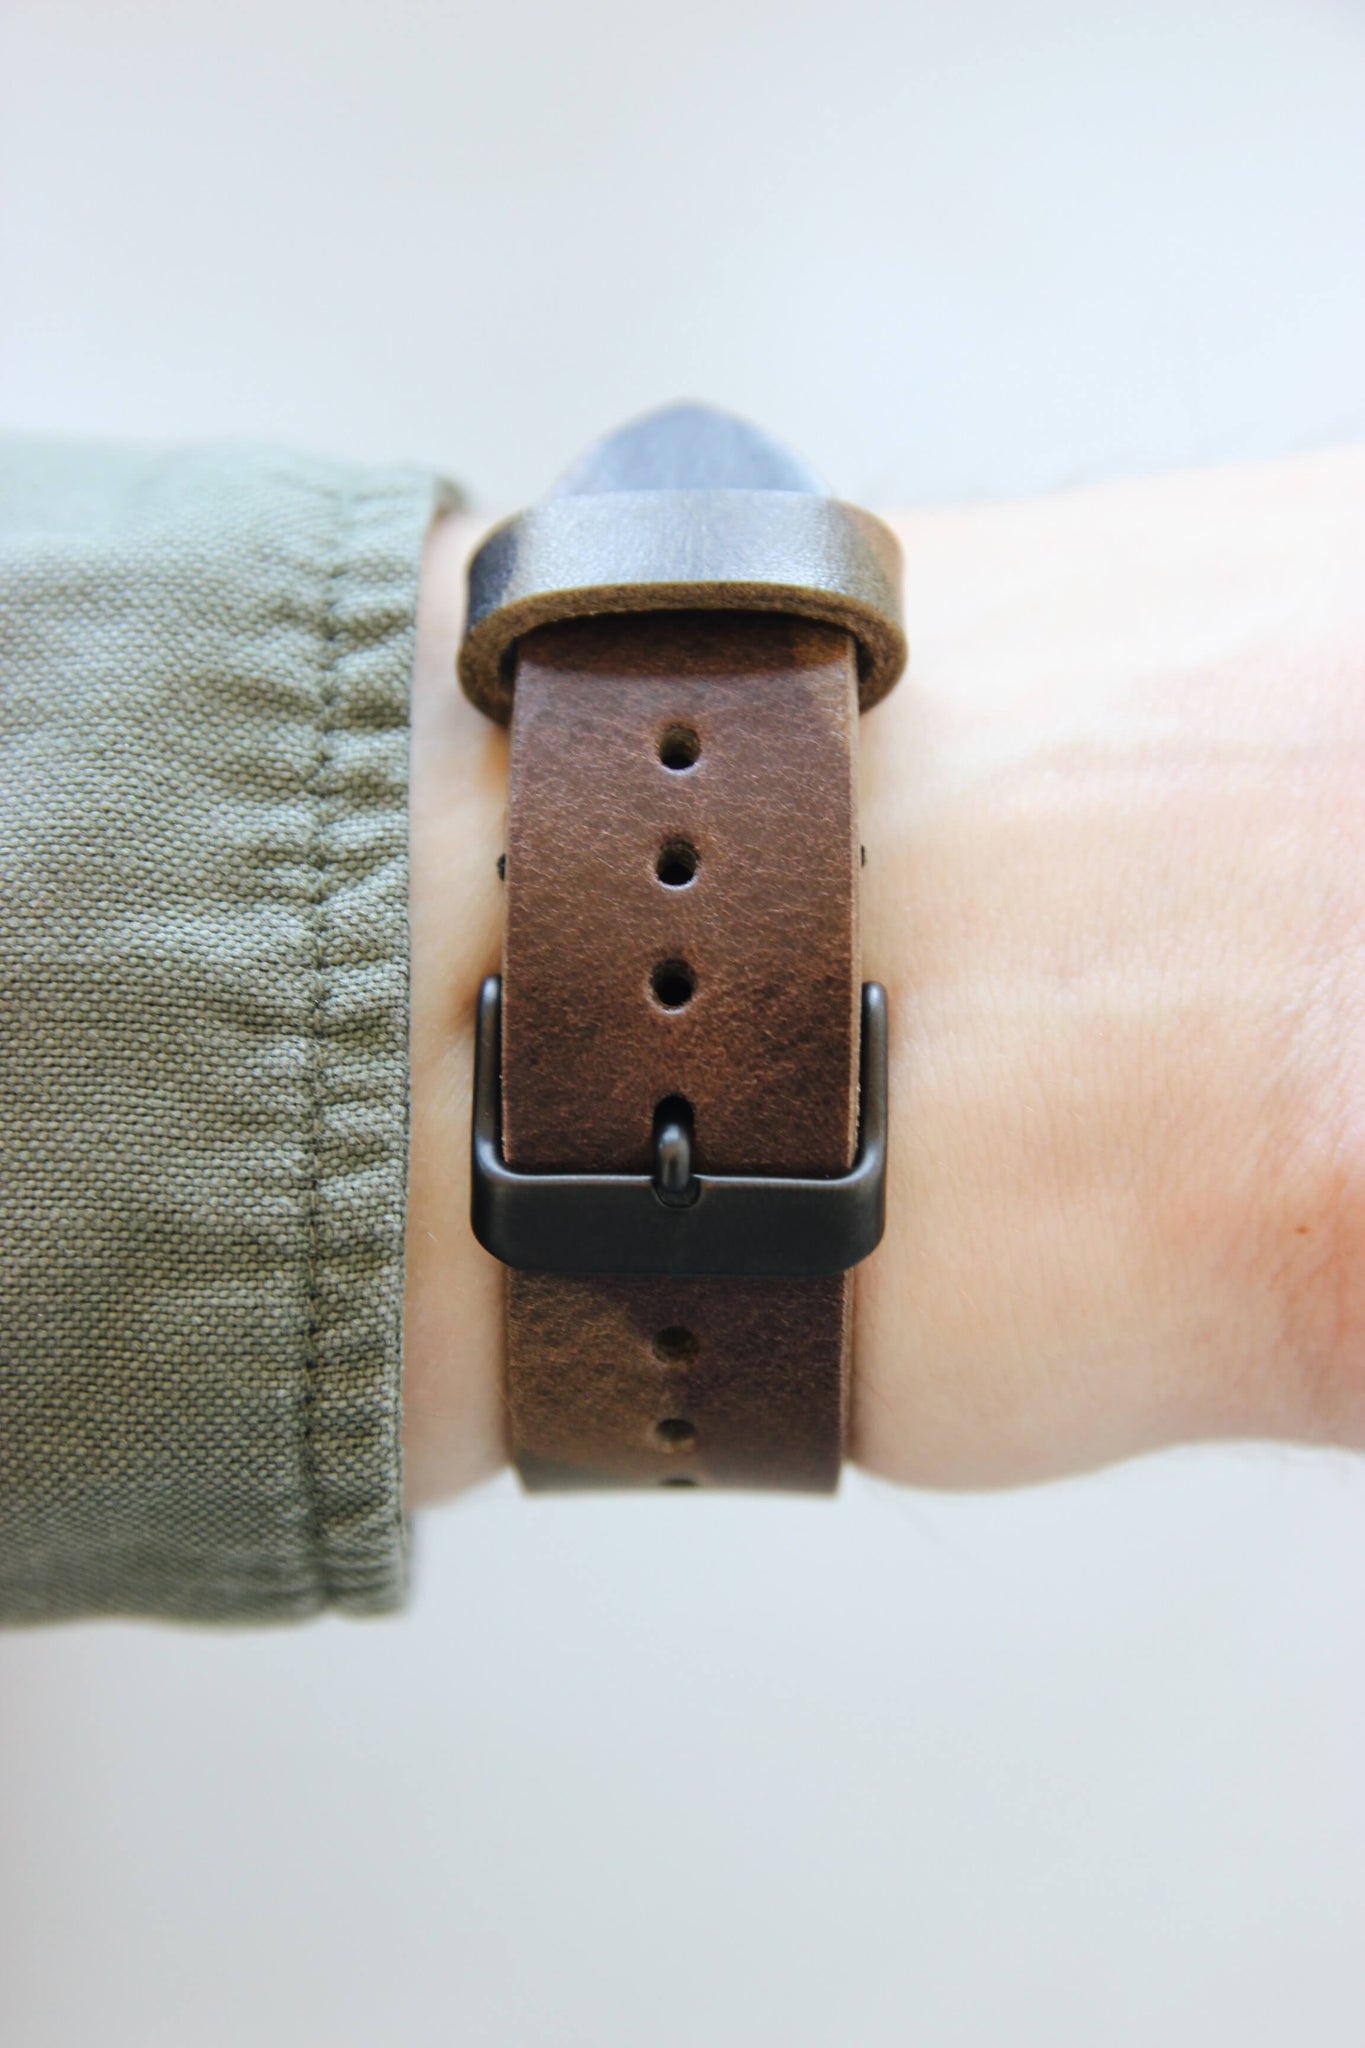 Rückansicht eines Apple Watch Lederbands in Camouflage am Handgelenk.